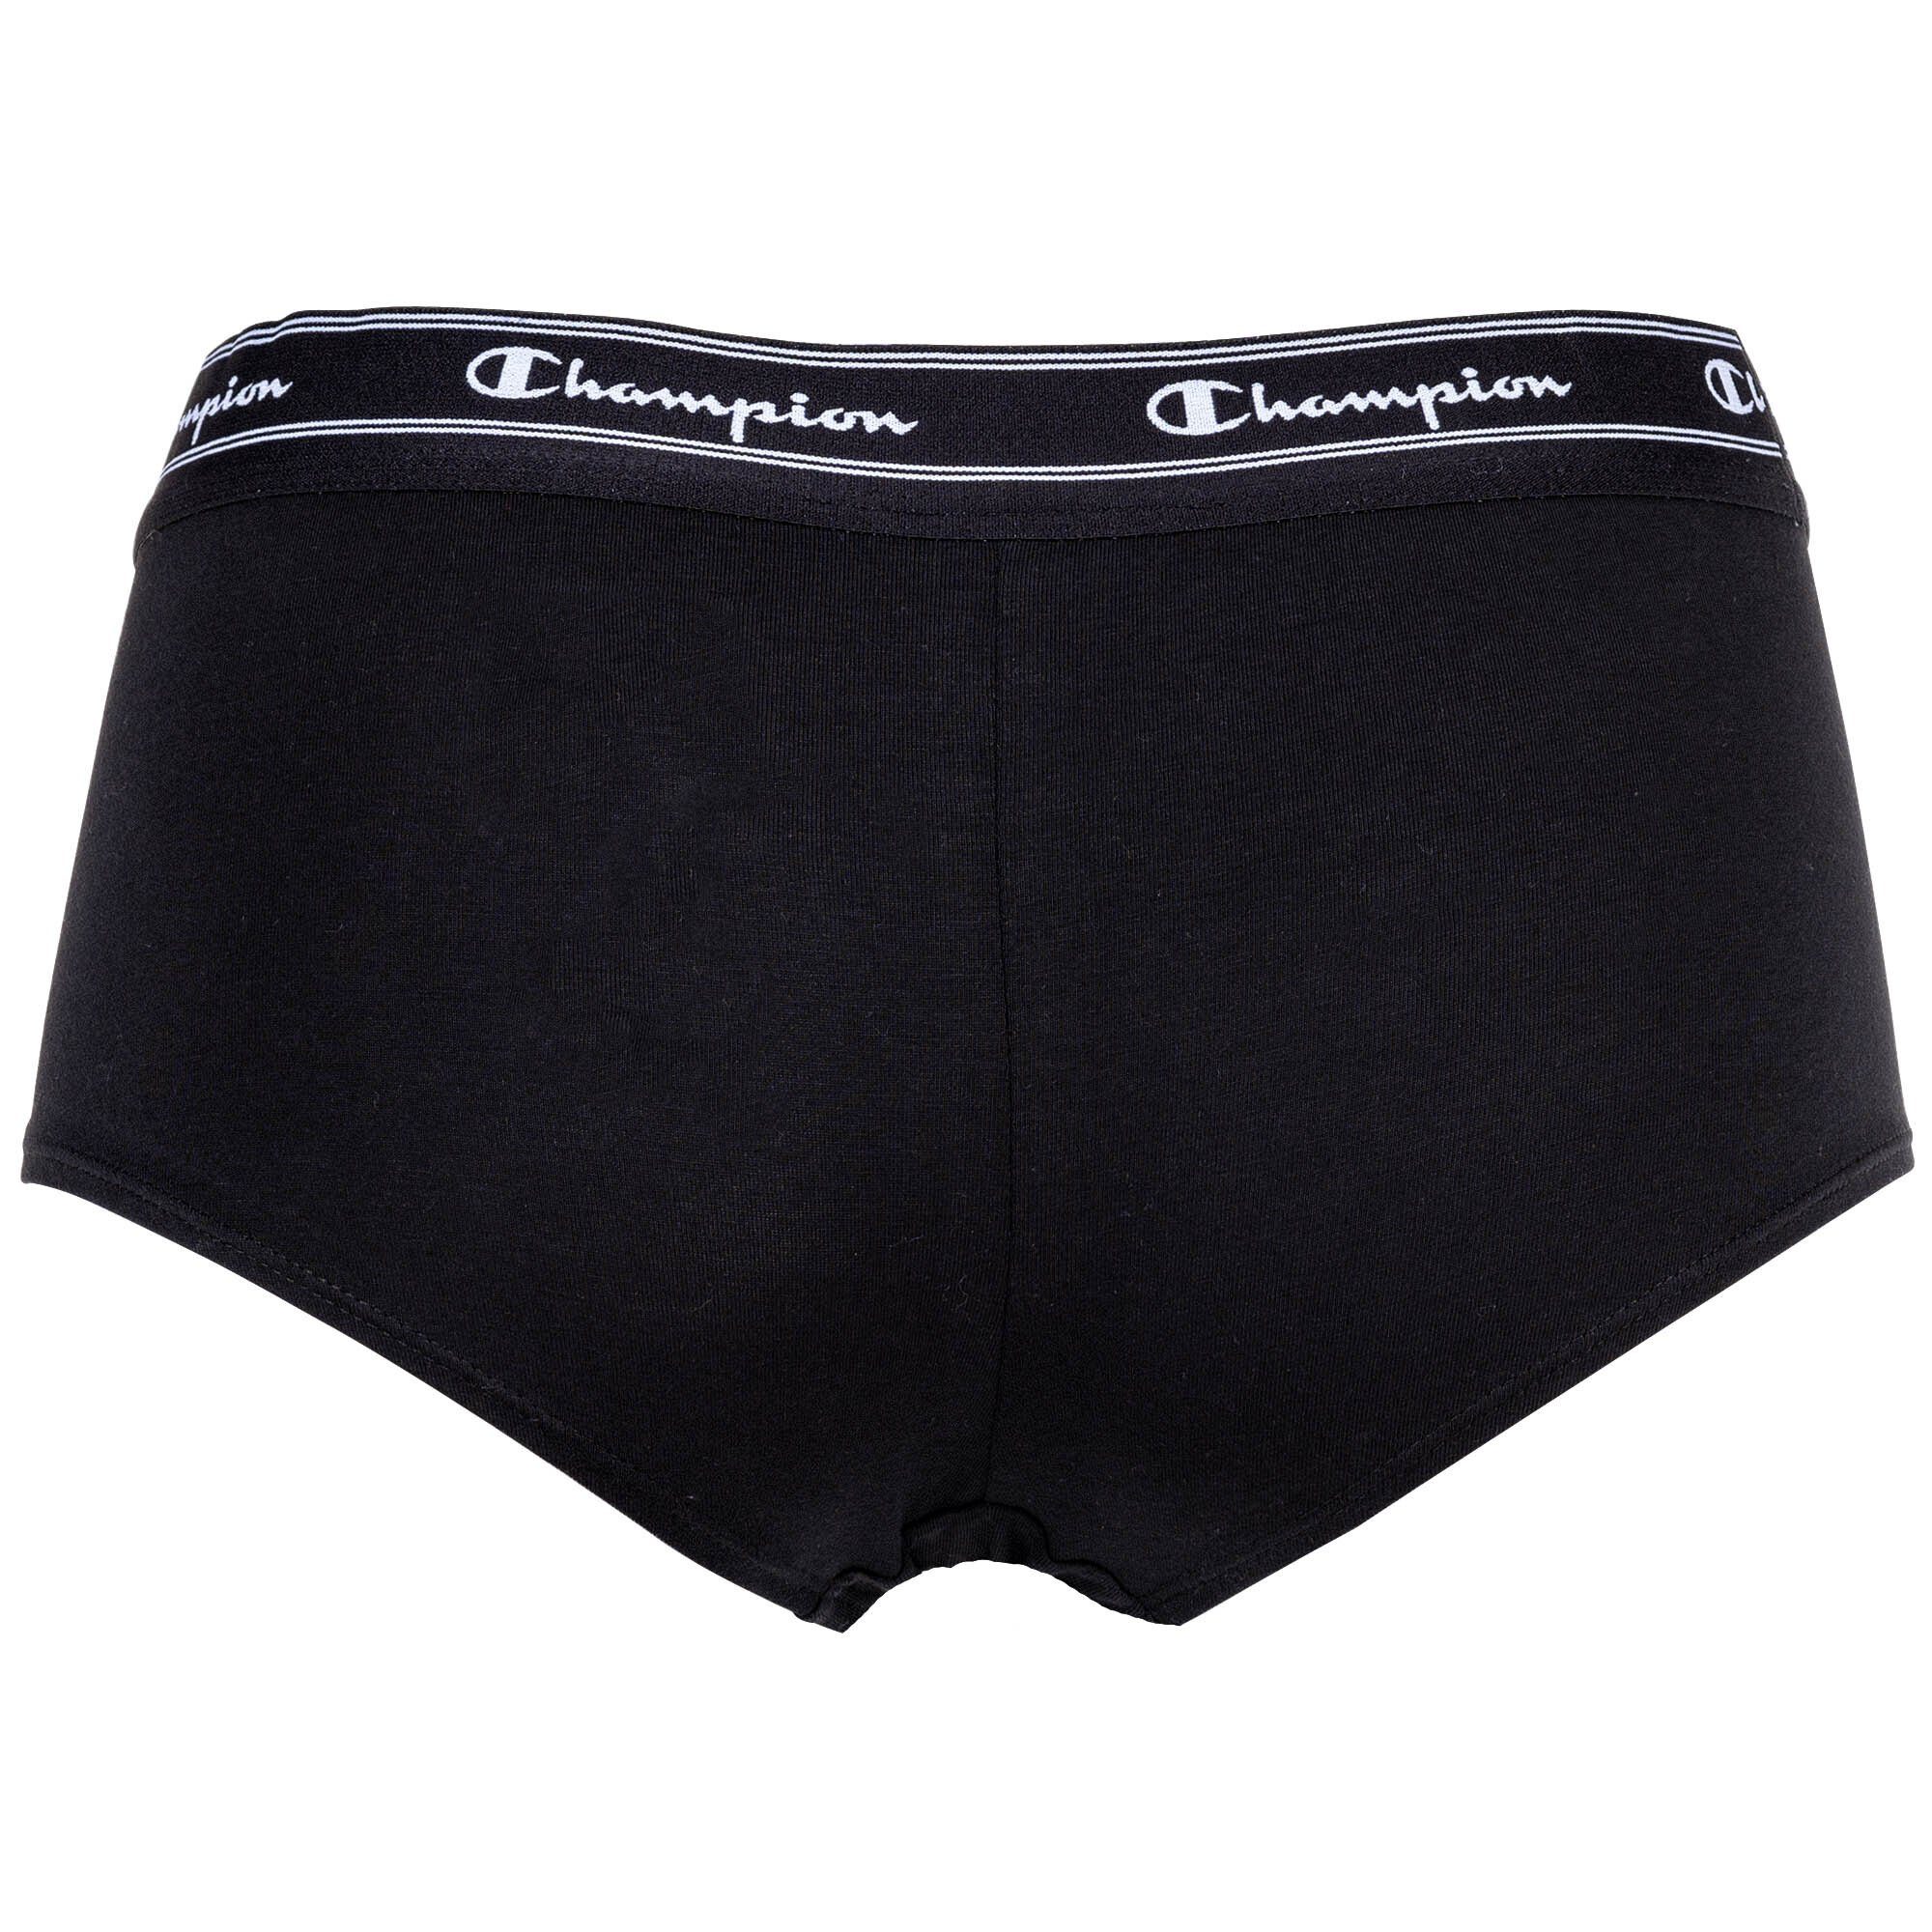 2er Hipster Logo-Bund Pack Pants, Weiß/Schwarz - Damen Slip Champion